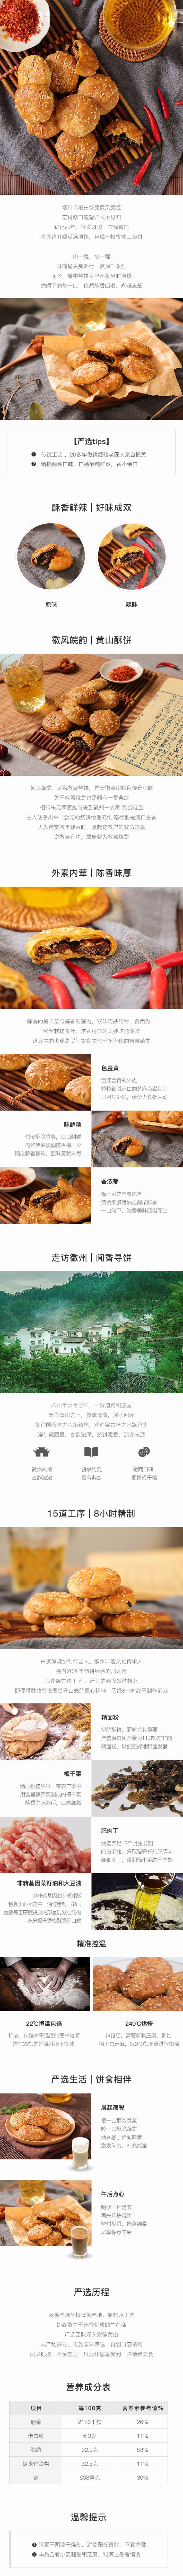 YANXUAN Mount Huang Clay Oven Rolls (Original Flavor 21g*8)